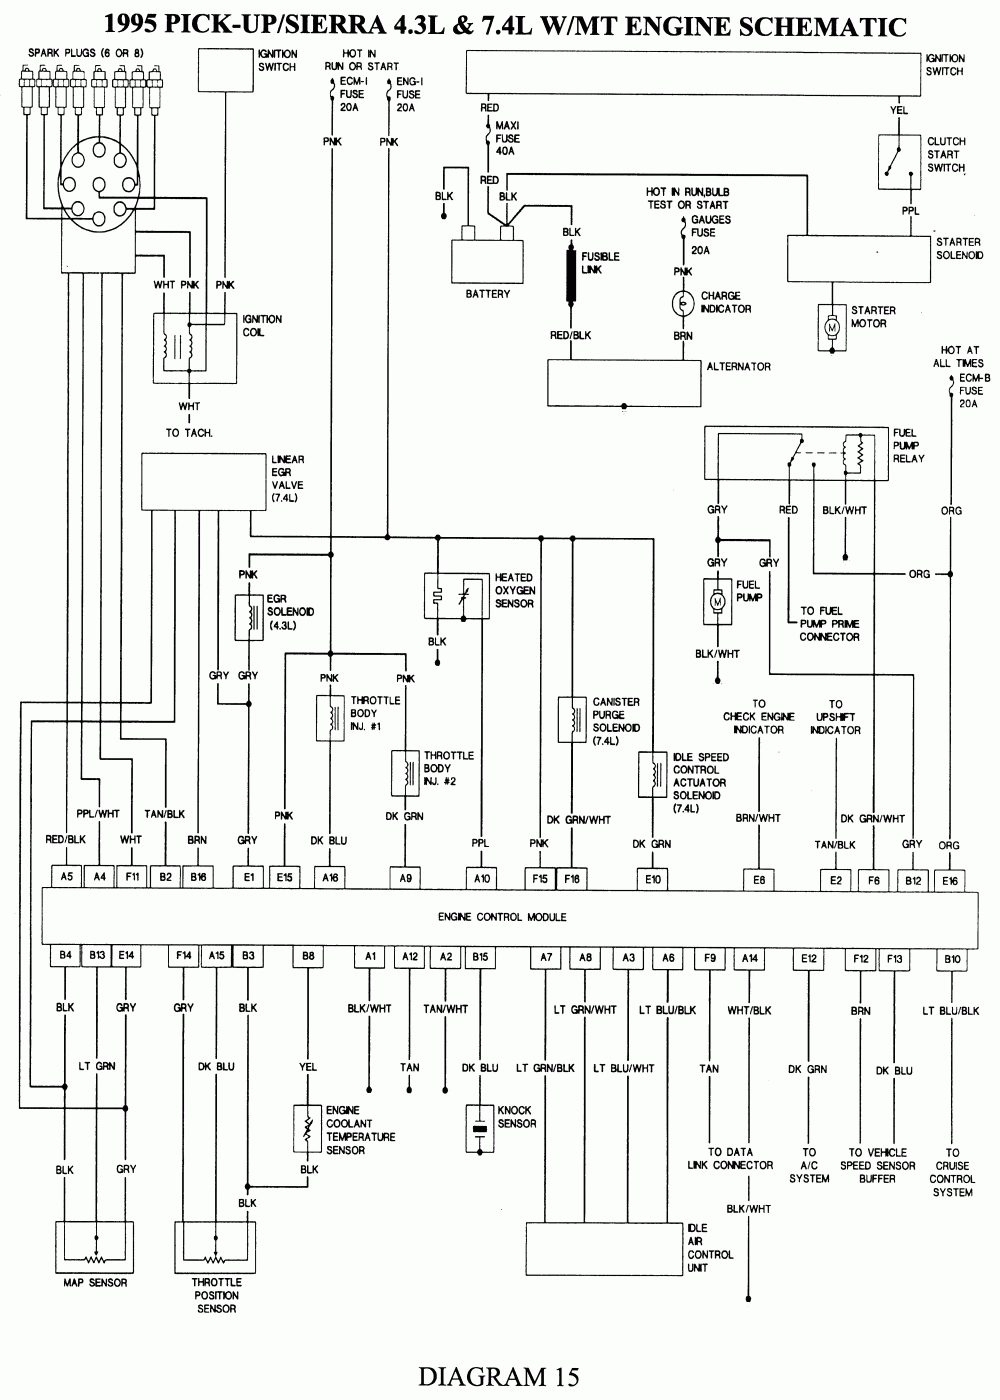 1998 Gmc Wiring Harness Diagram - Wiring Diagrams Hubs - 1998 Chevy Silverado Fuel Pump Wiring Diagram